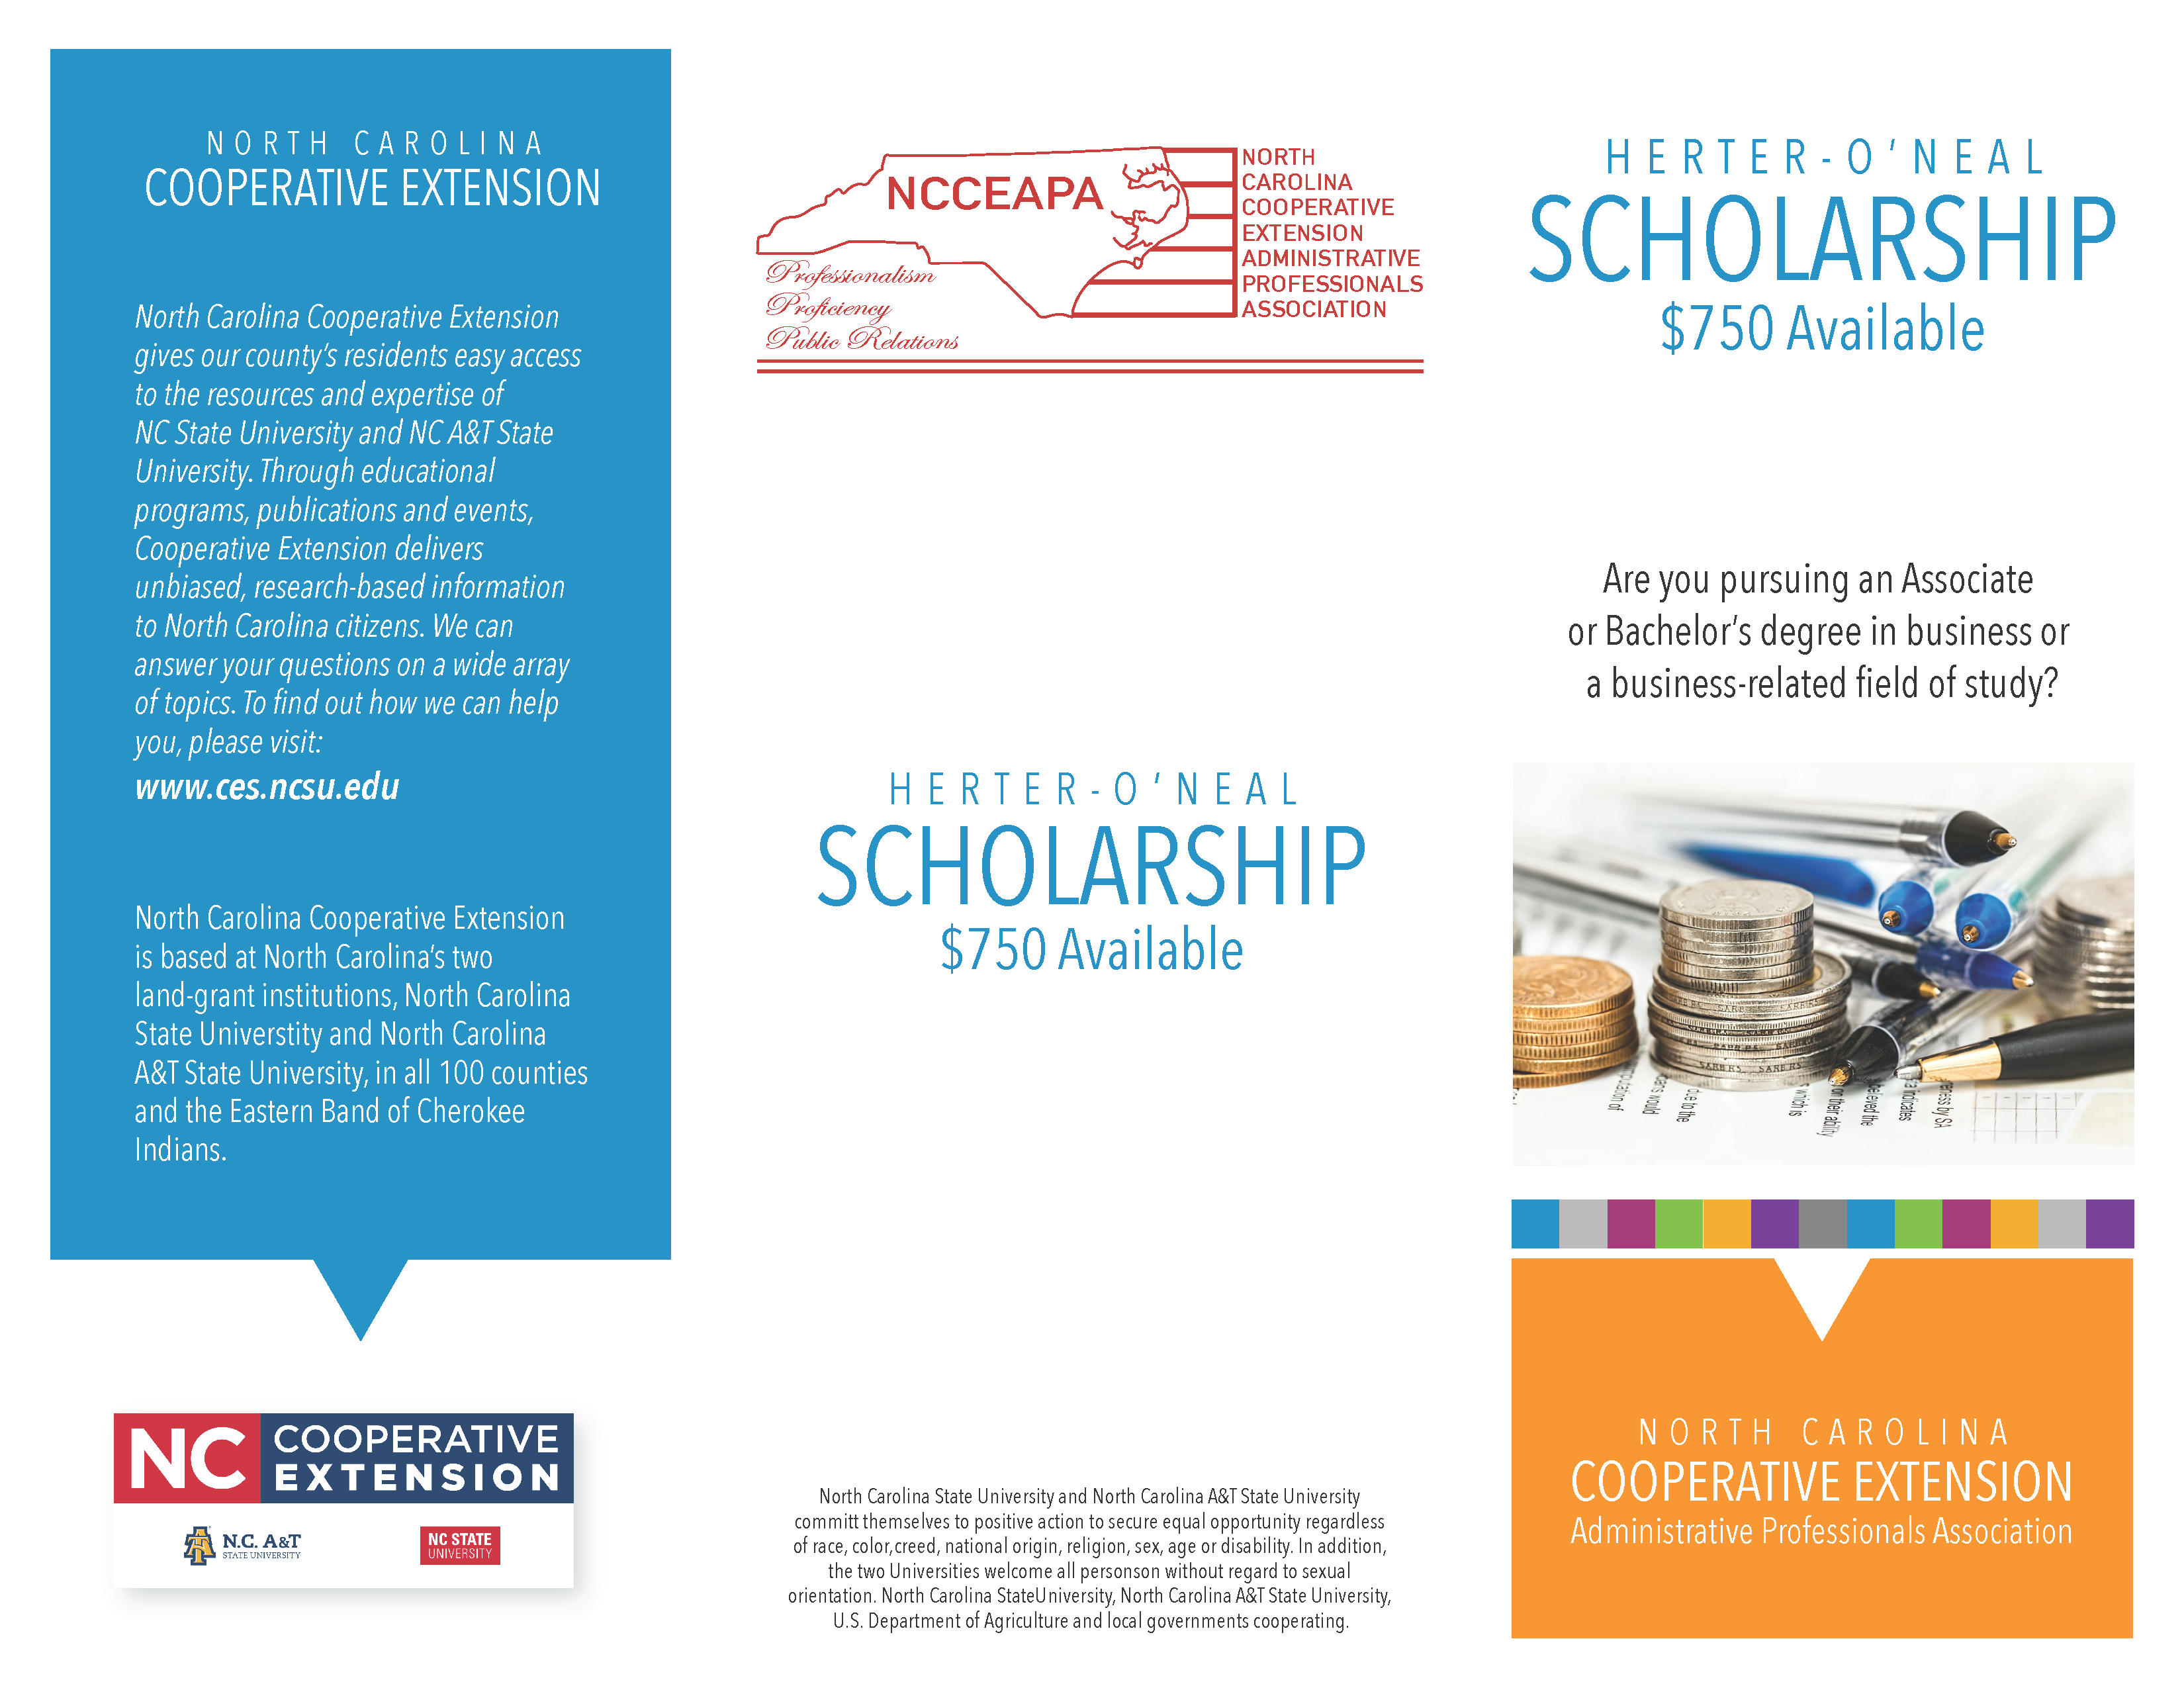 2021 Herter O'Neal Scholarship informational flyer